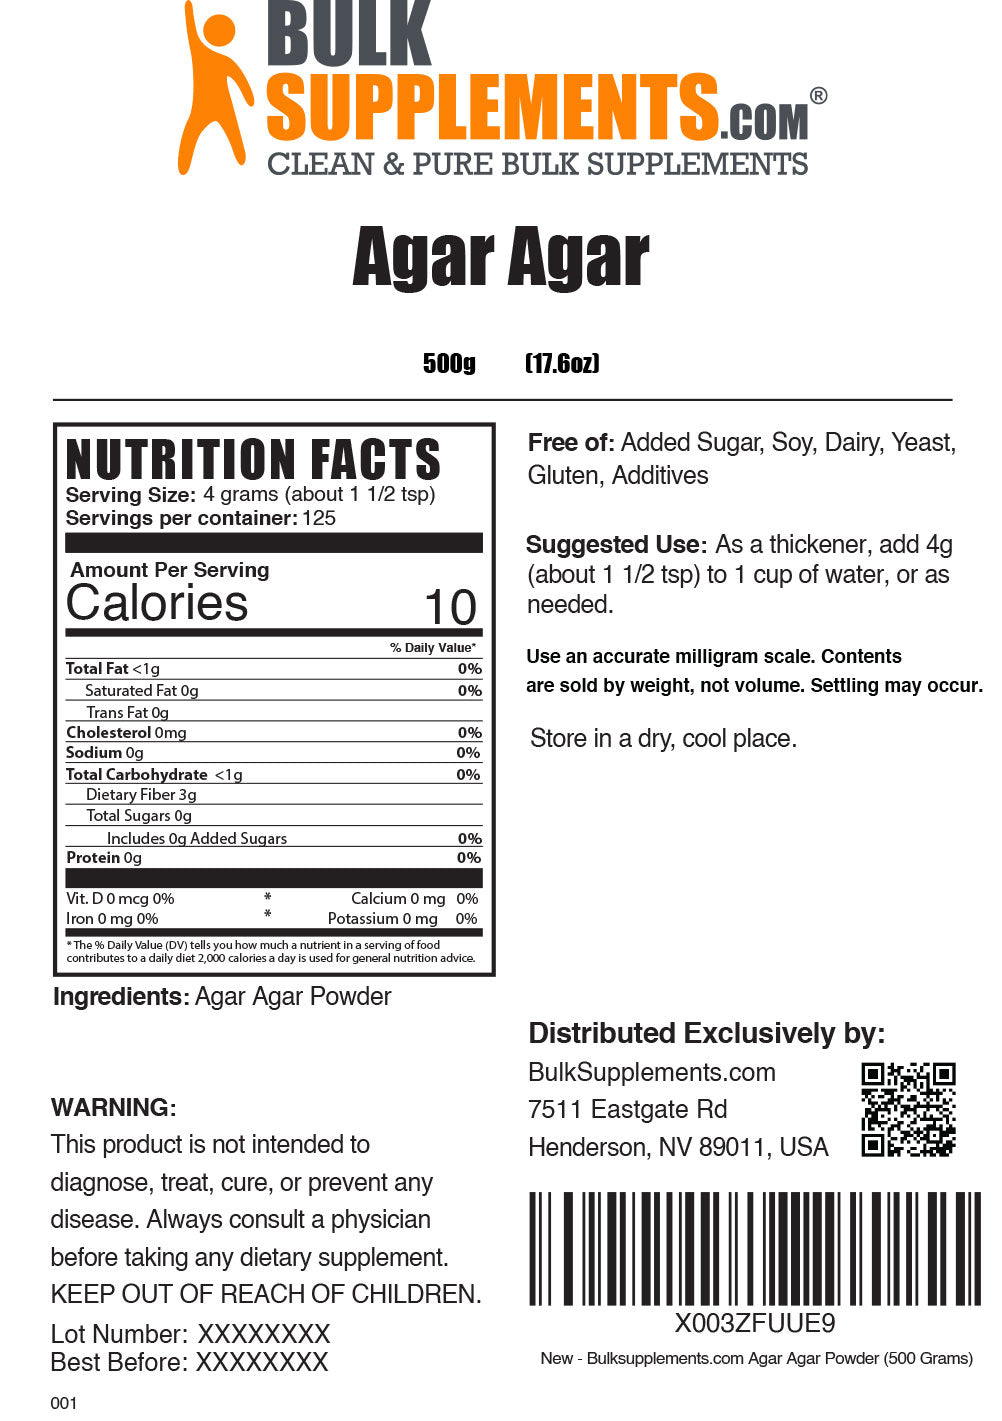 Agar Agar powder label 500g